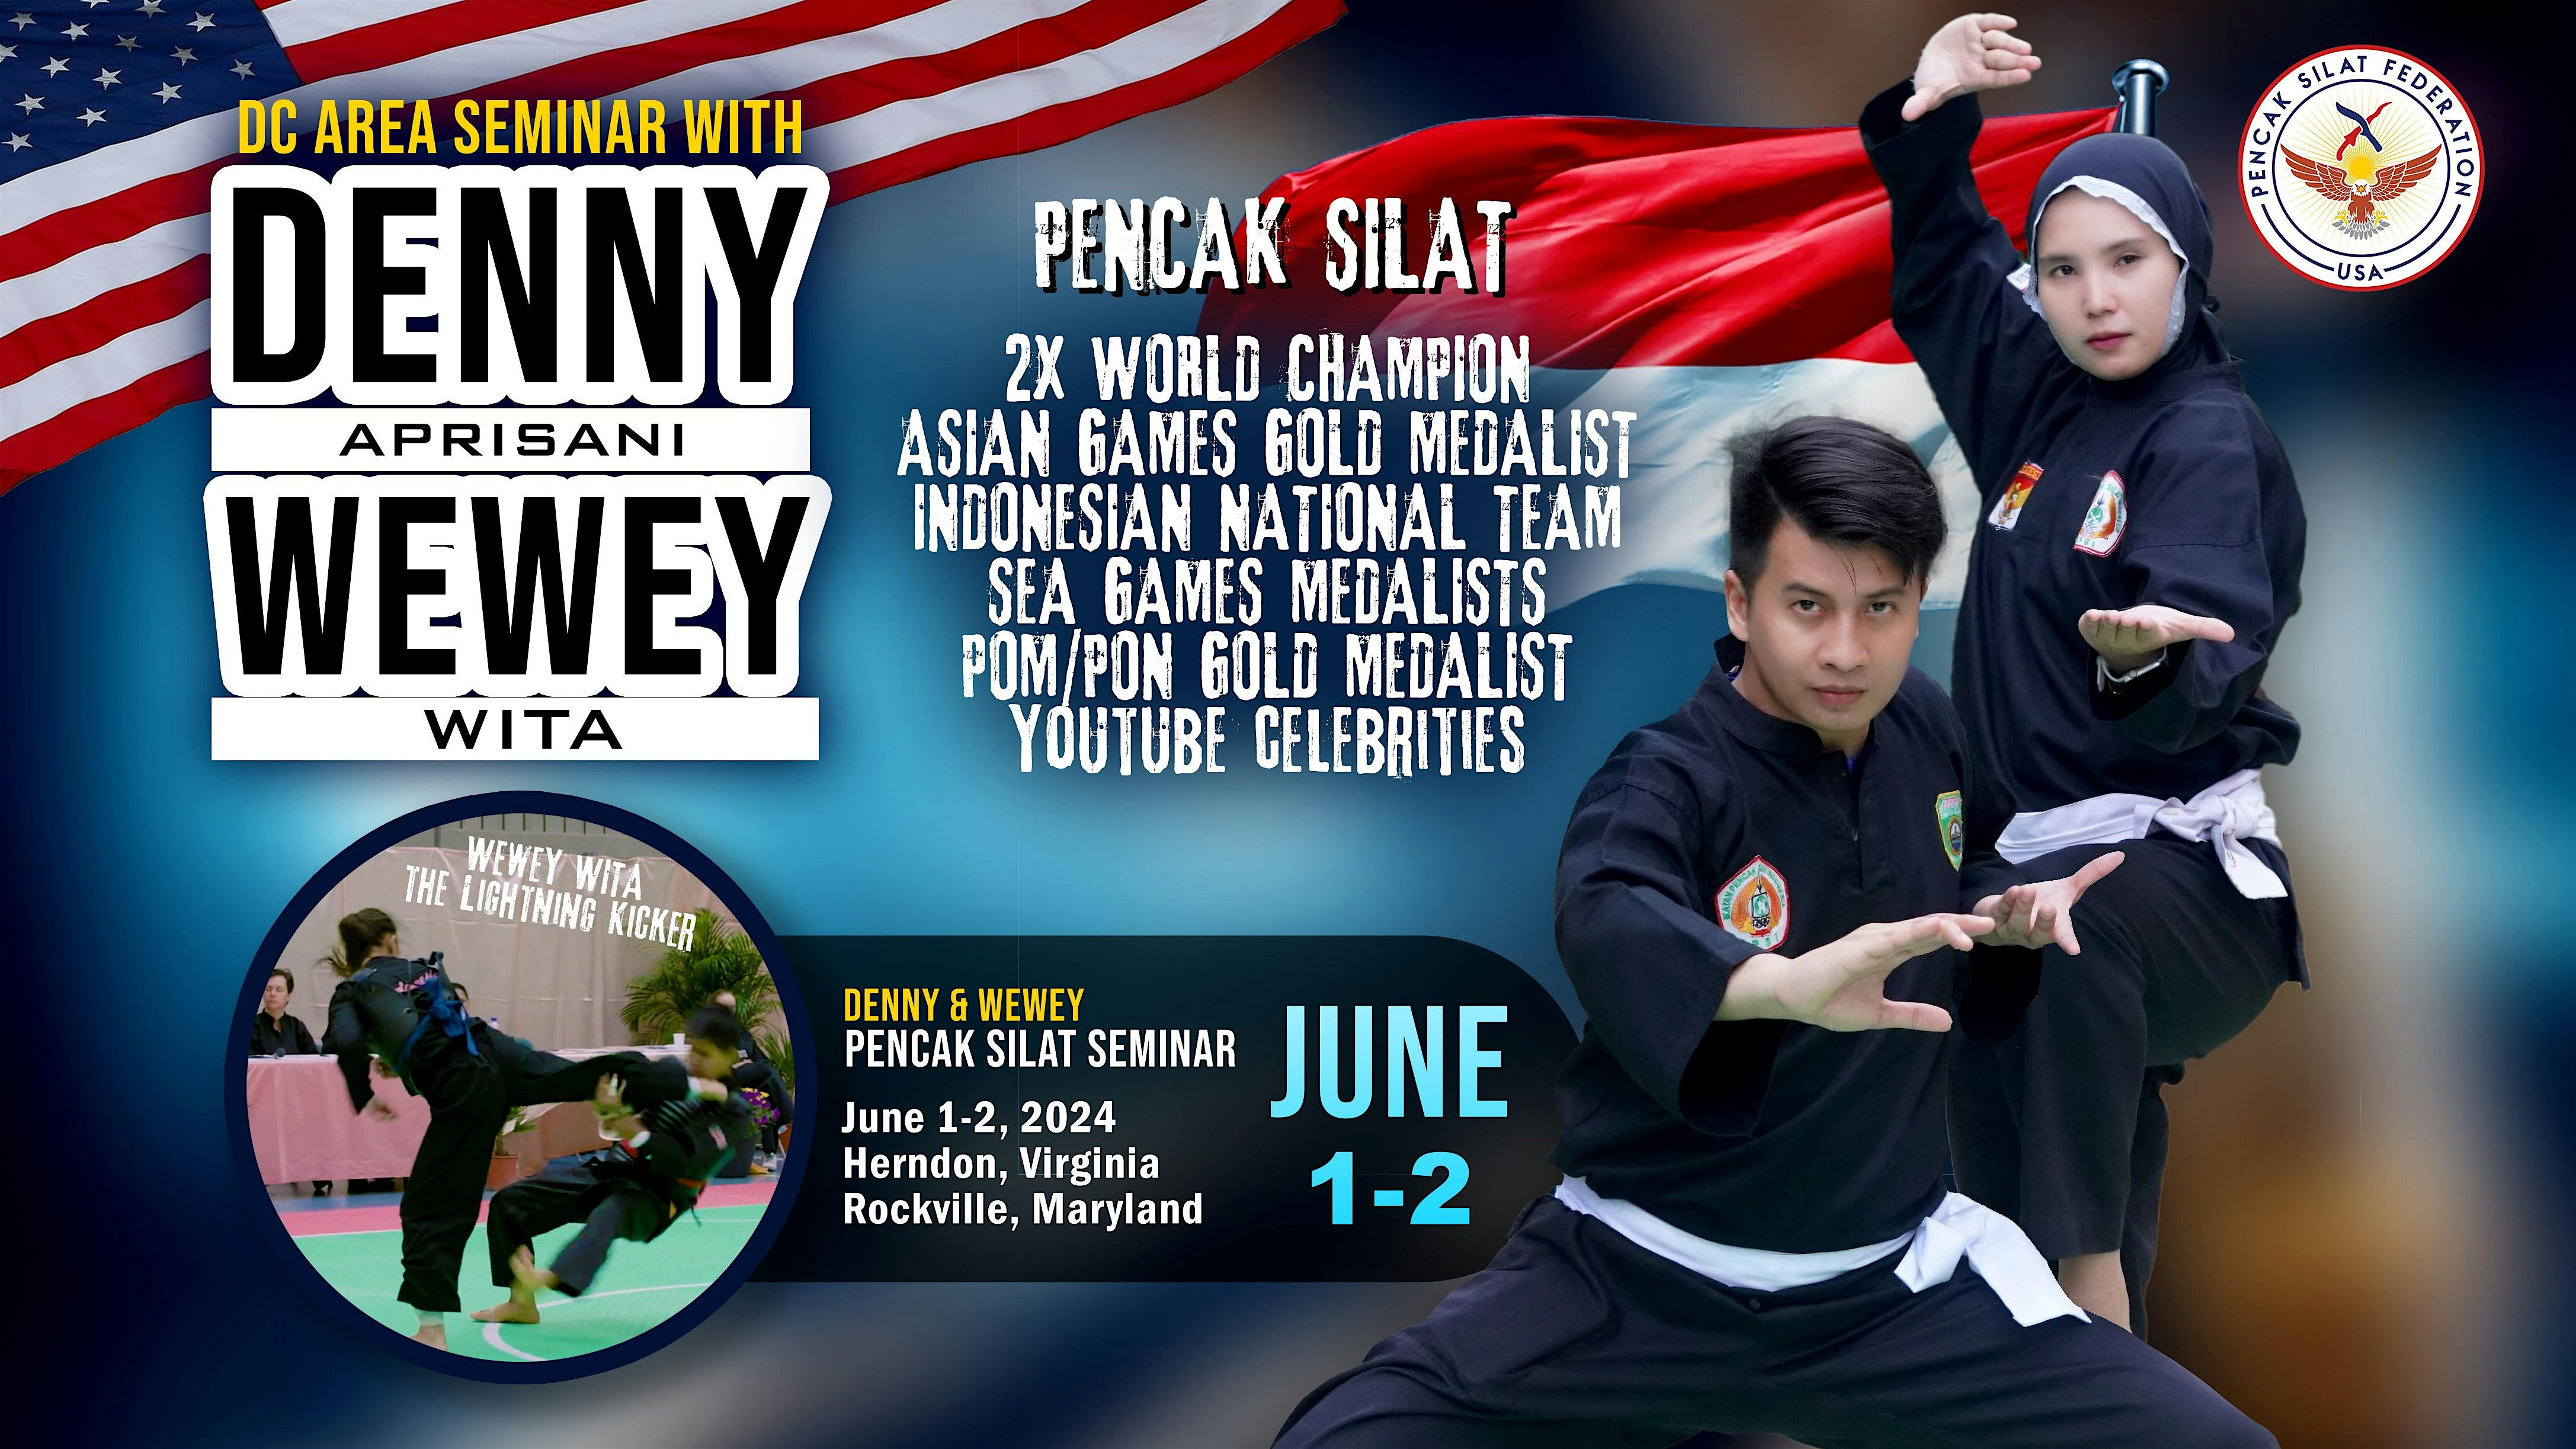 Denny Wewey - Silat Martial Arts Seminar